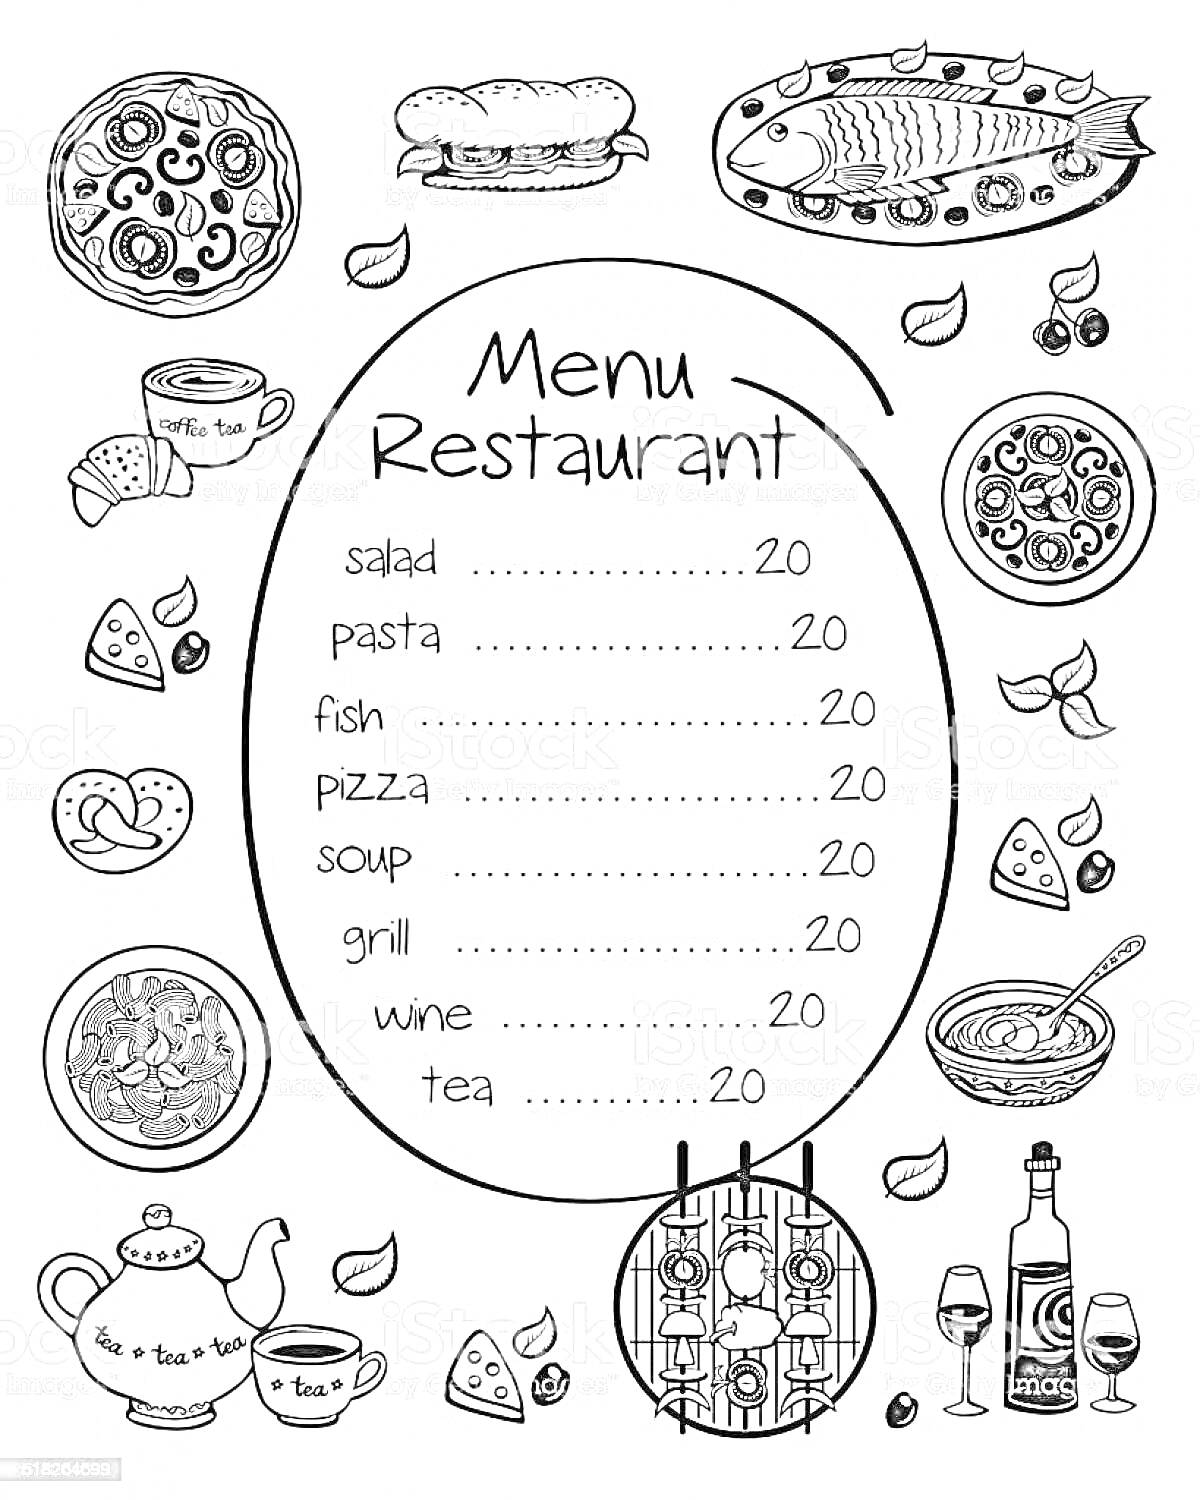 Раскраска Меню ресторана с изображением пиццы, бутерброда, рыбы на блюде, кусочков сыра, чизкейка со взбитыми сливками, яиц, салата из овощей, чашки супа с ложкой, кофейника и чашки, бутылки вина и бокалов, кусочков лимона.